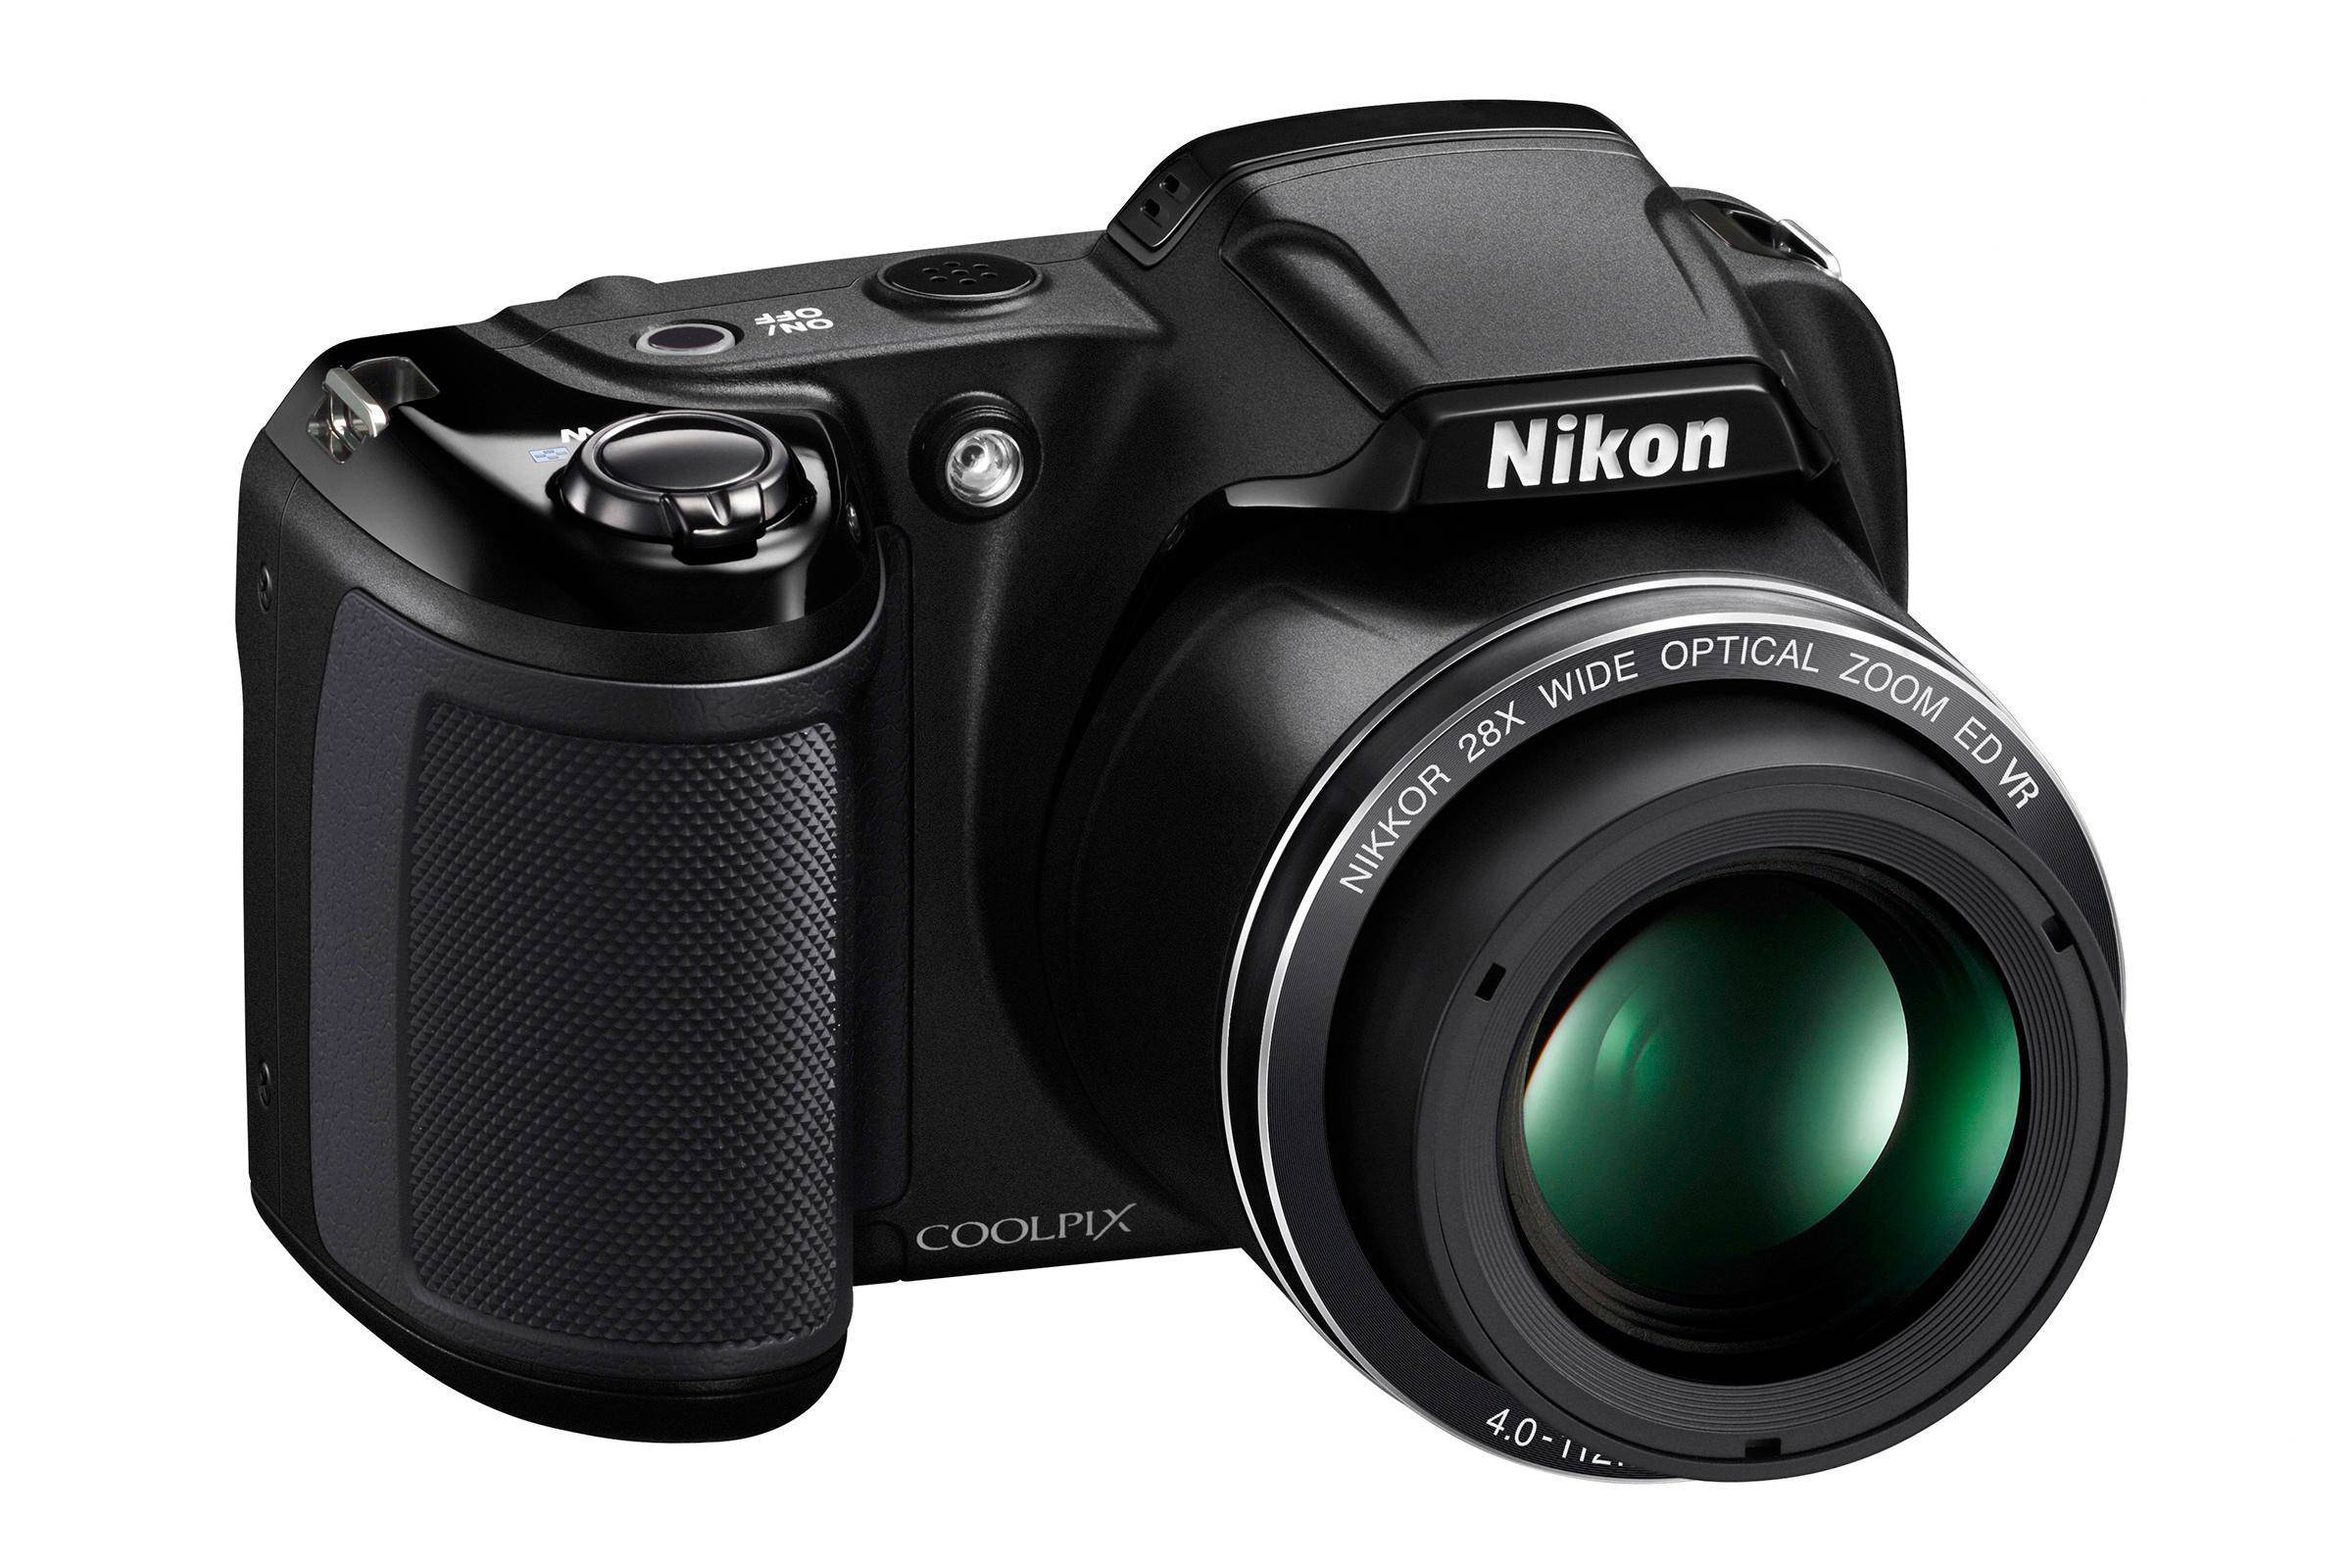 128cm MSF312 Tripod 50" for Nikon L340 L840 S9900 S9700 S7000 AW130 P900 